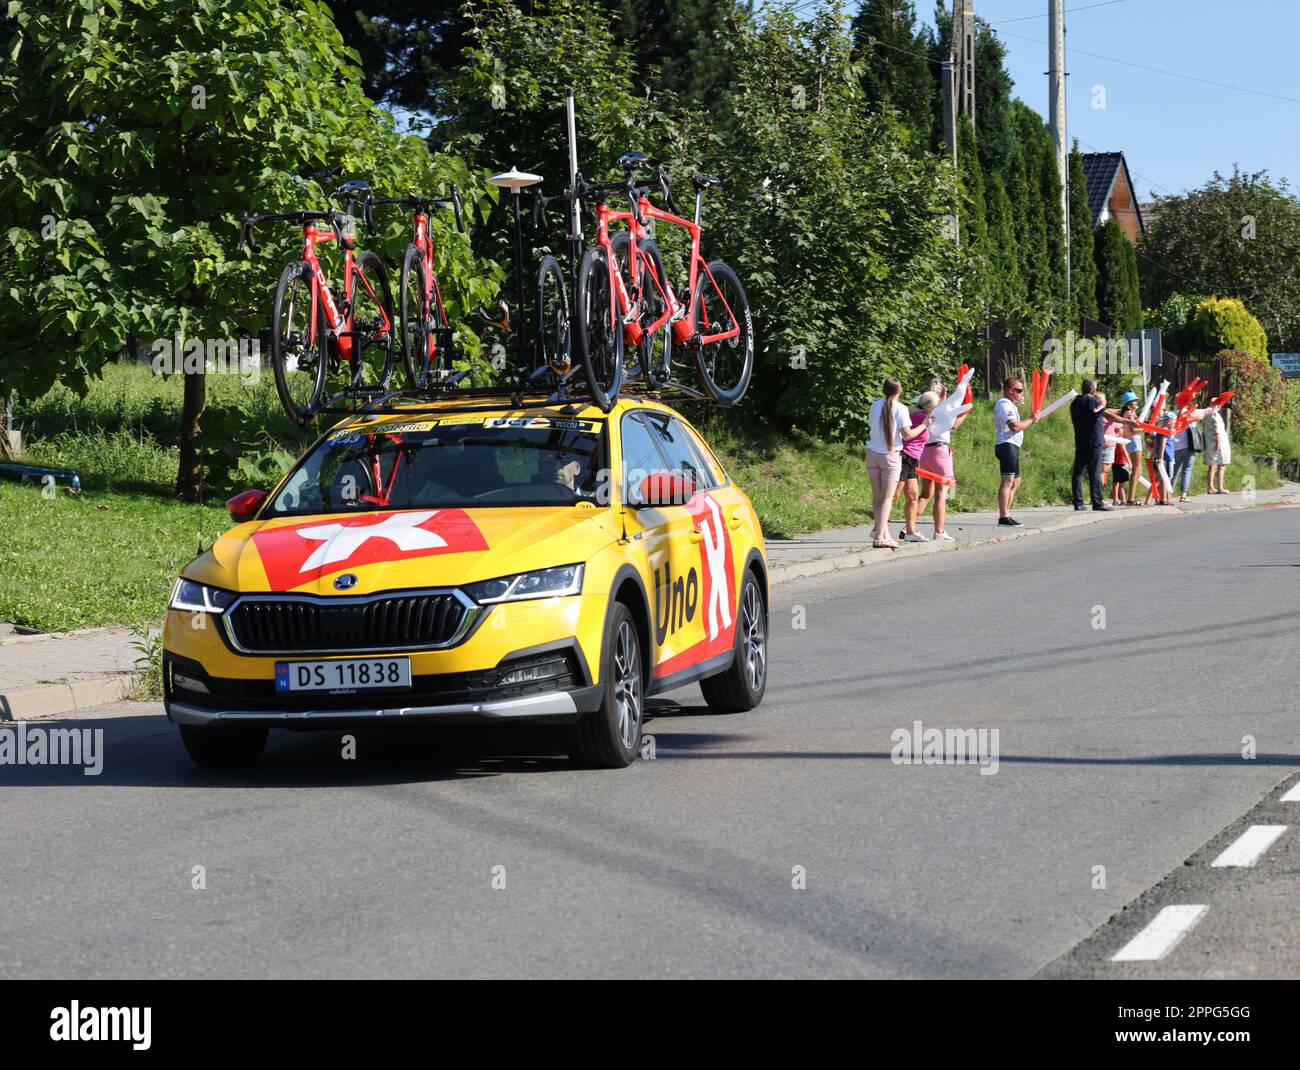 Uno X Pro CyclingTeam veicolo sul percorso del Tour de Pologne UCI â€“ World Tour, tappa 7 Skawina - Cracovia. Foto Stock